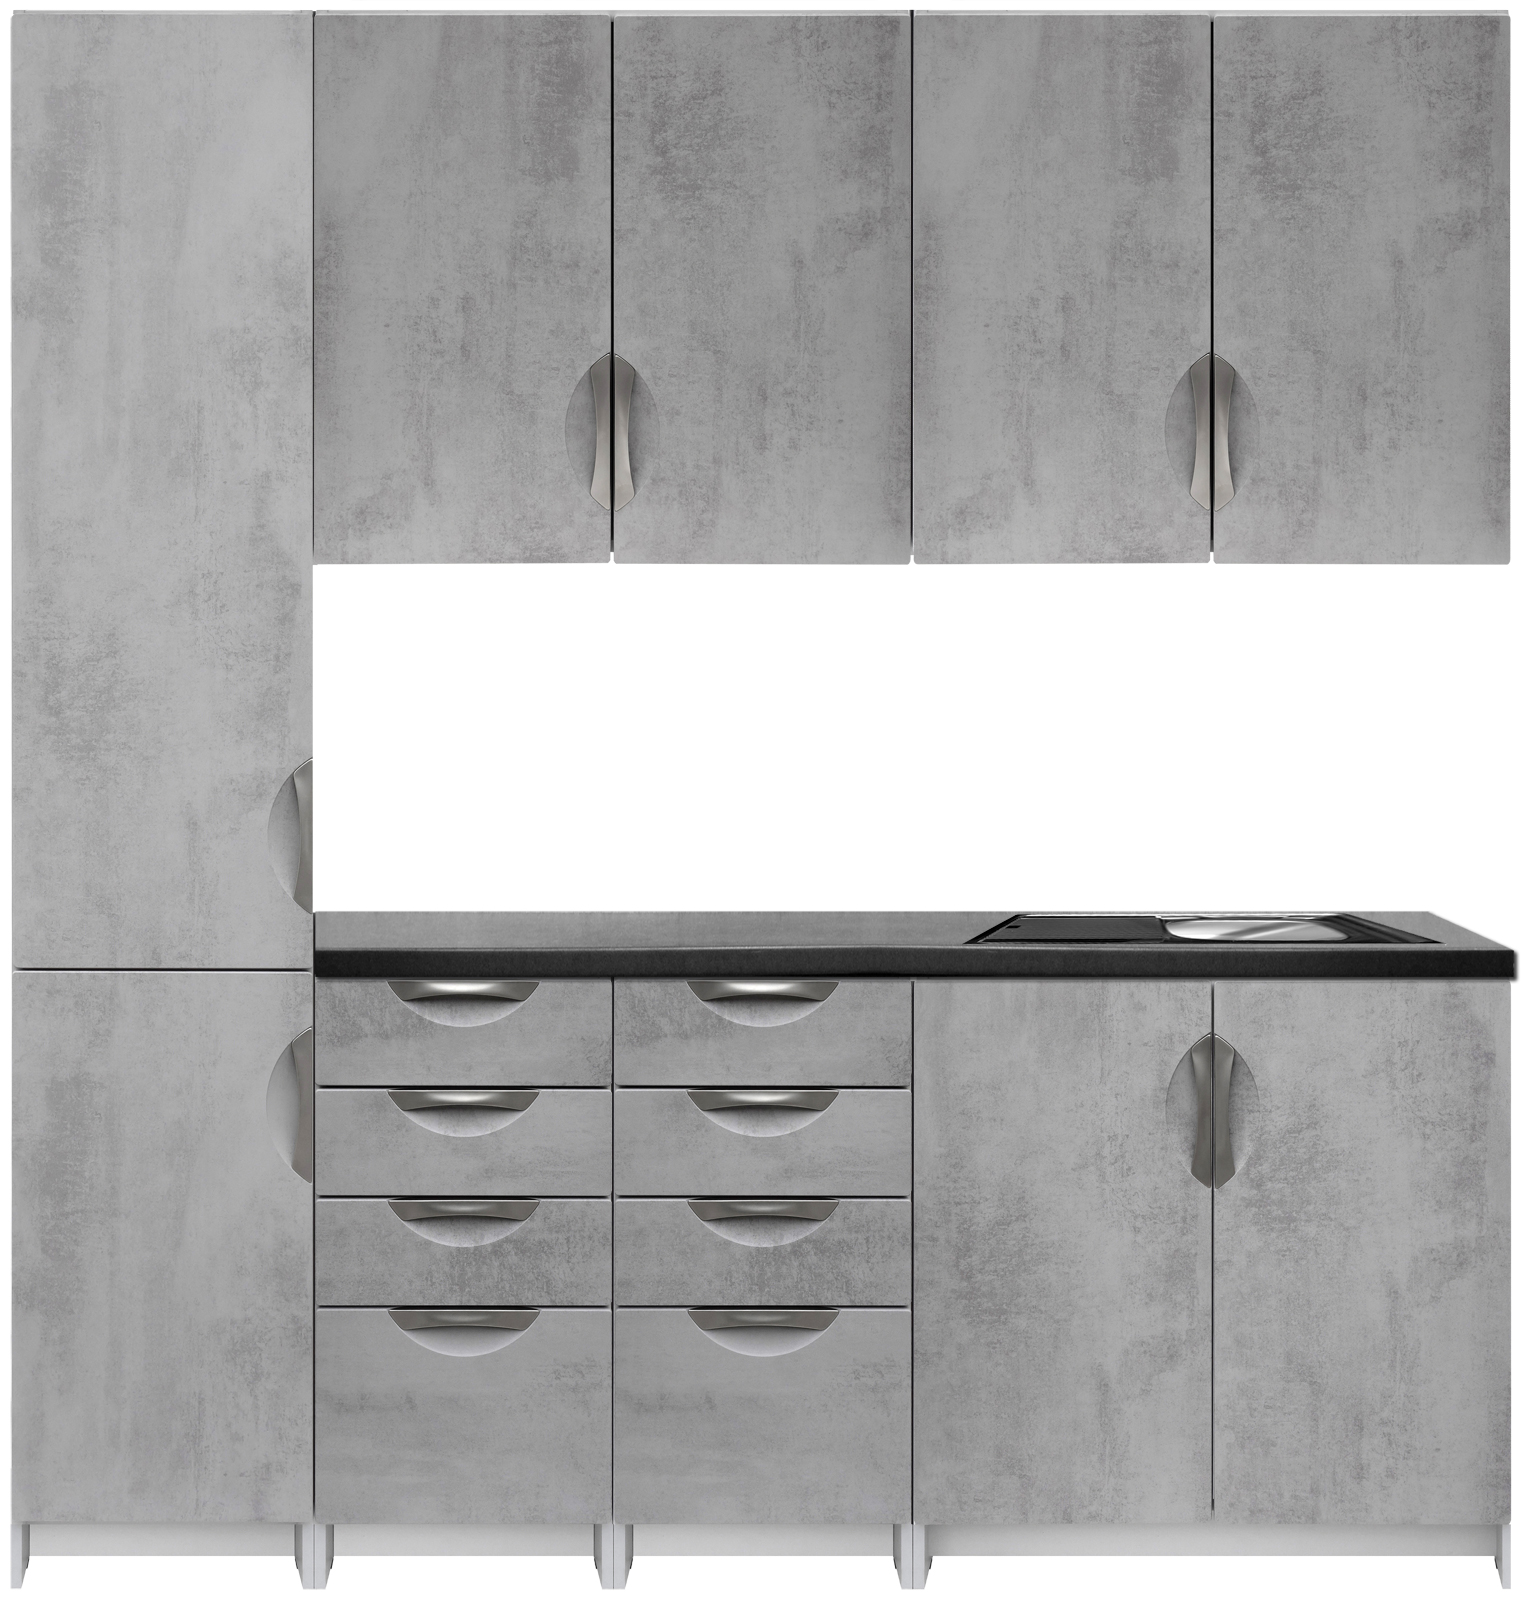 Kuchyňská linka 200 cm barva beton korpus šedý